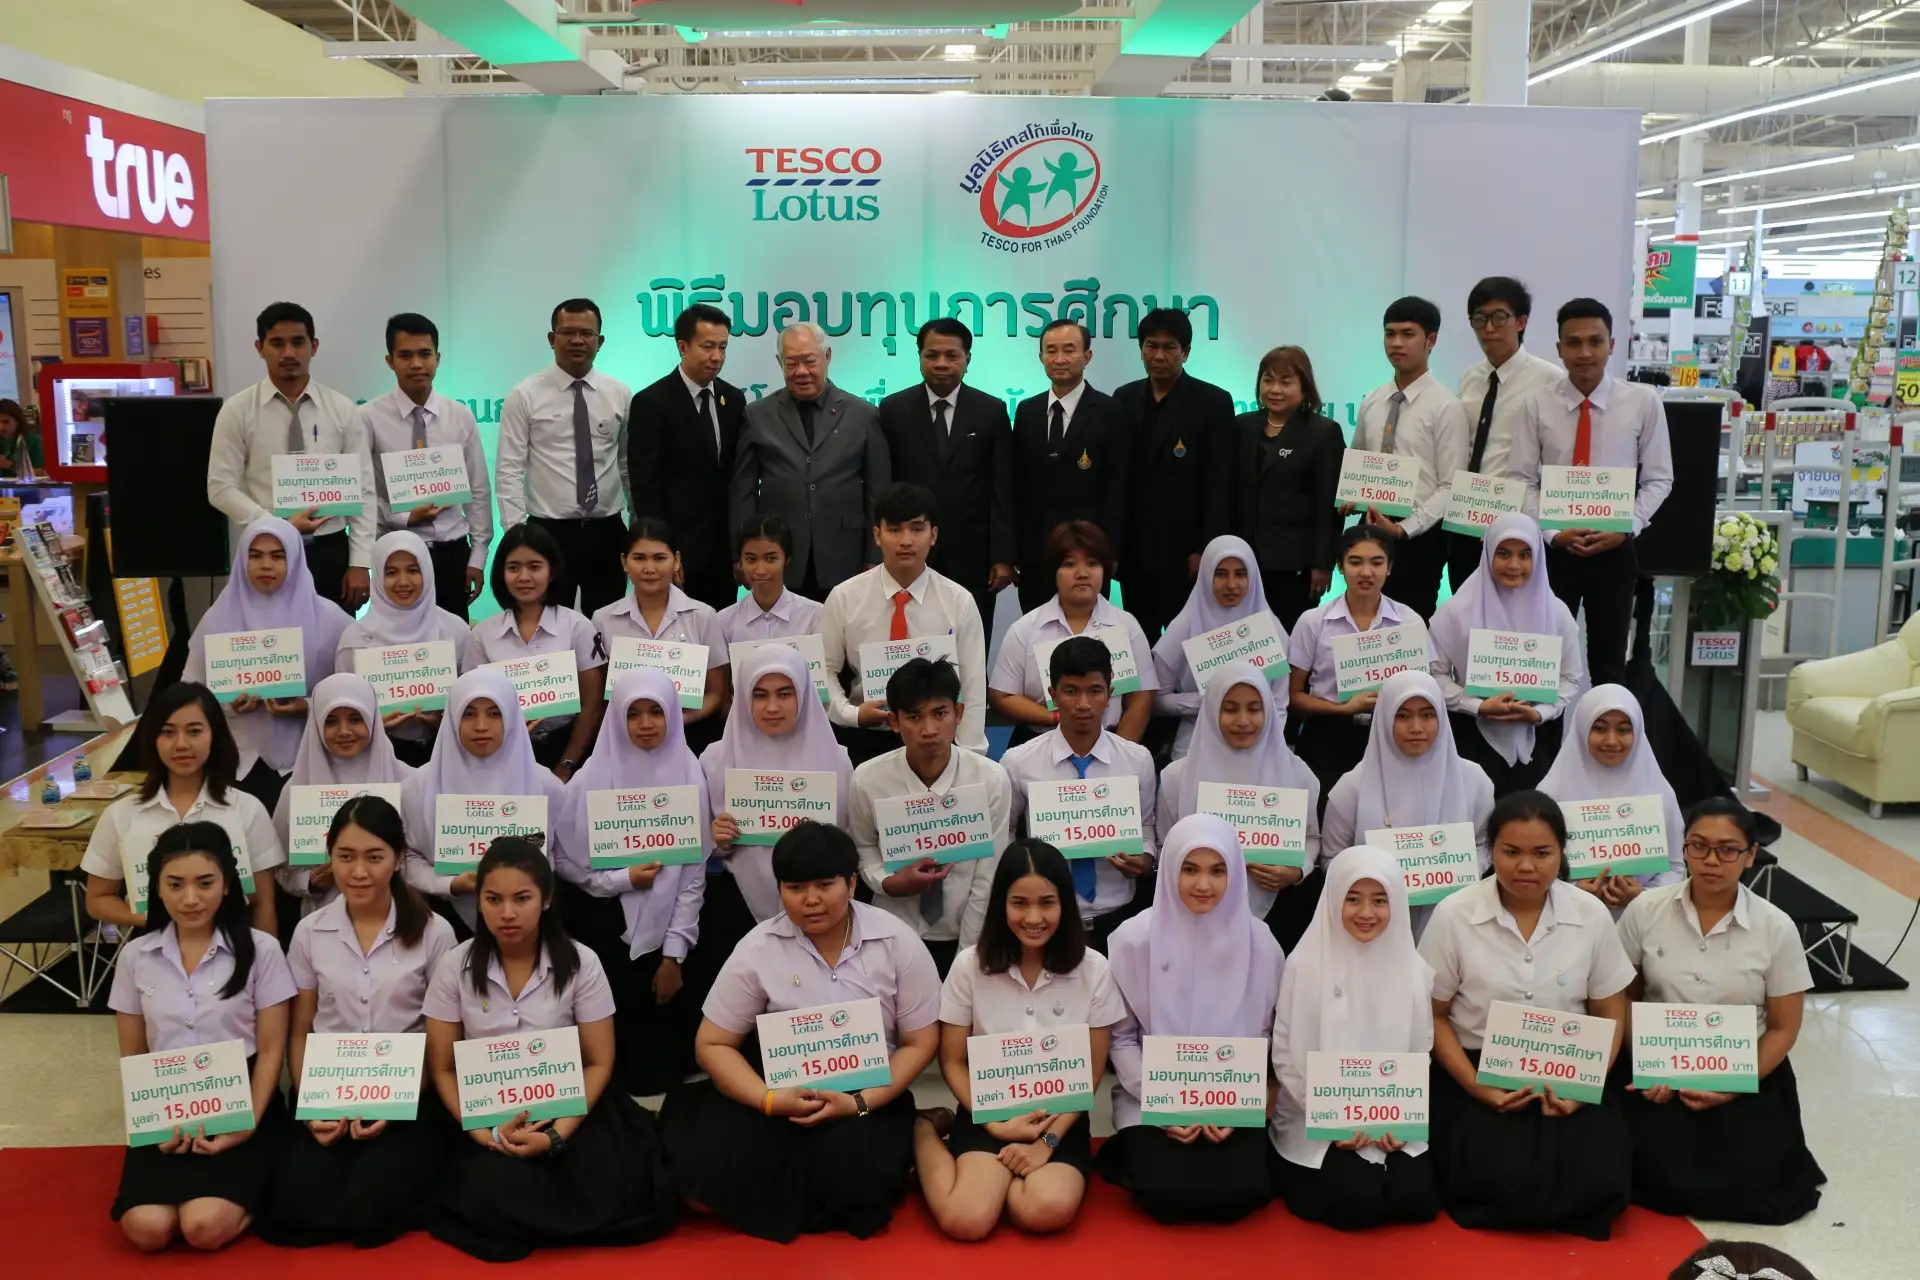 เทสโก้ โลตัส และมูลนิธิเทสโก้เพื่อไทย เดินหน้ามอบทุนการศึกษา 200 ทุนทั่วประเทศ